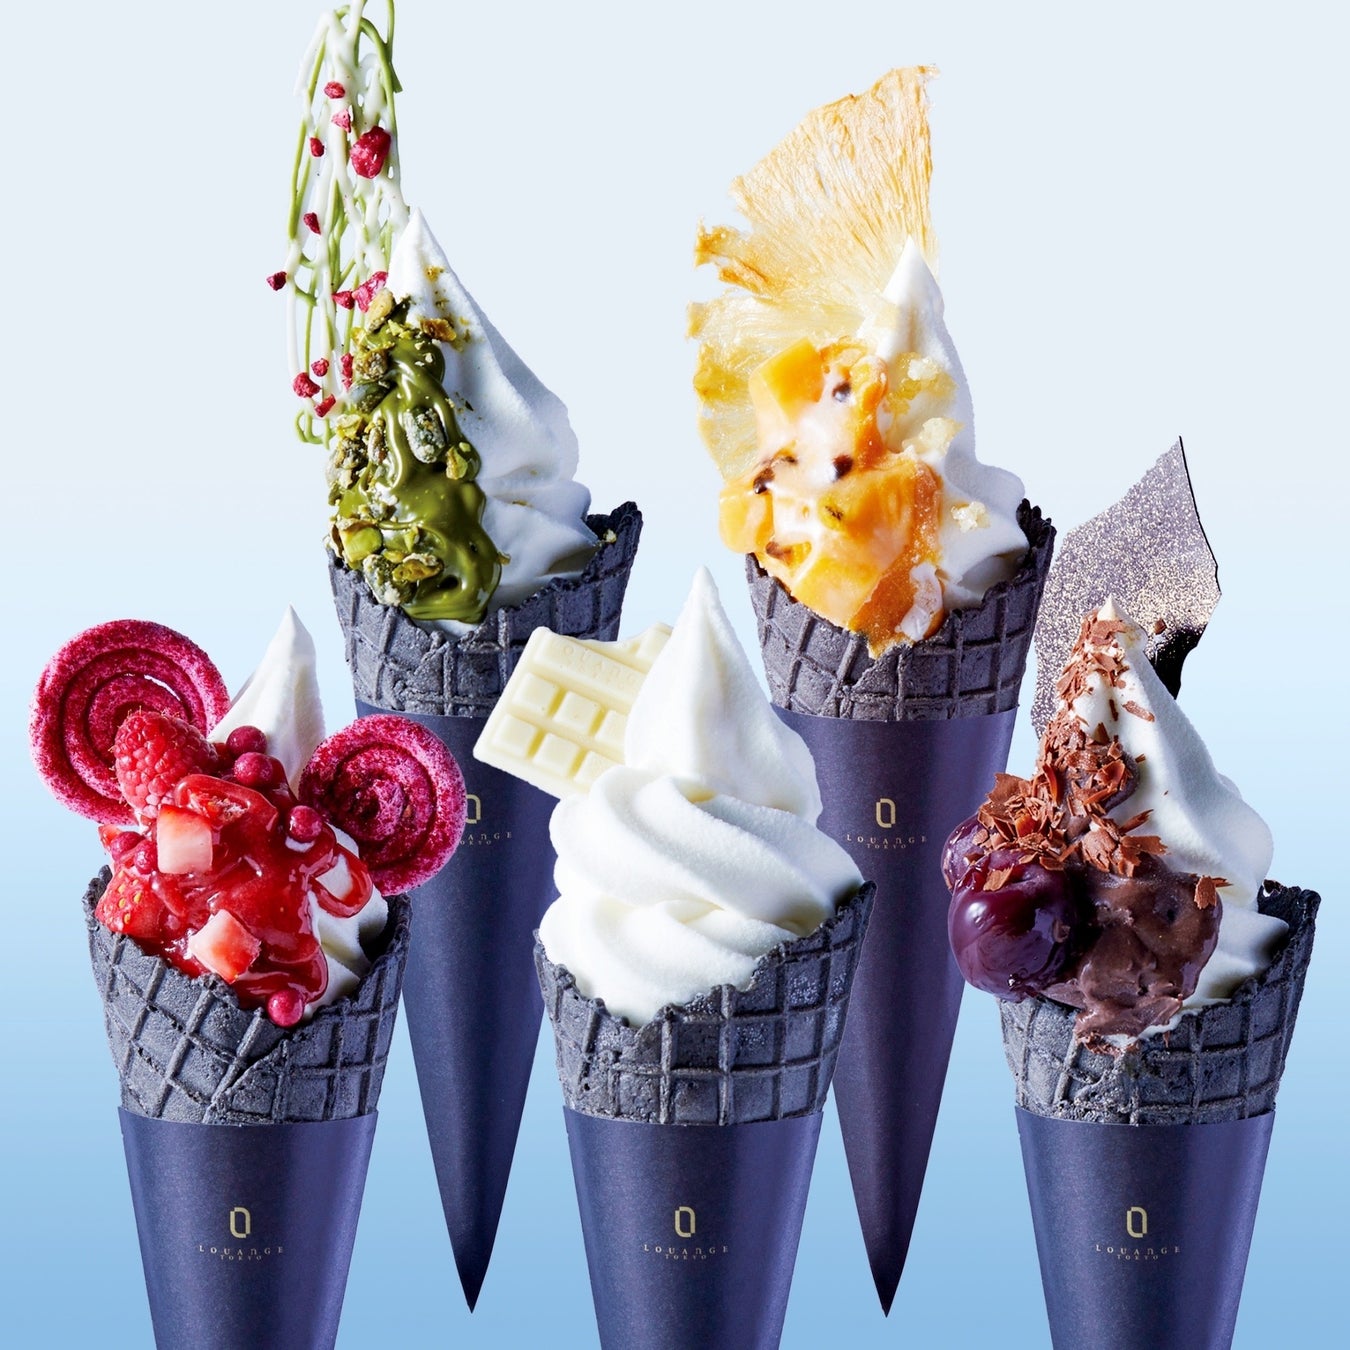 アート作品のようなスイーツで人気の「LOUANGE TOKYO Le Musée」新作は夏気分を盛り上げるプレミアムなソフトクリーム!!